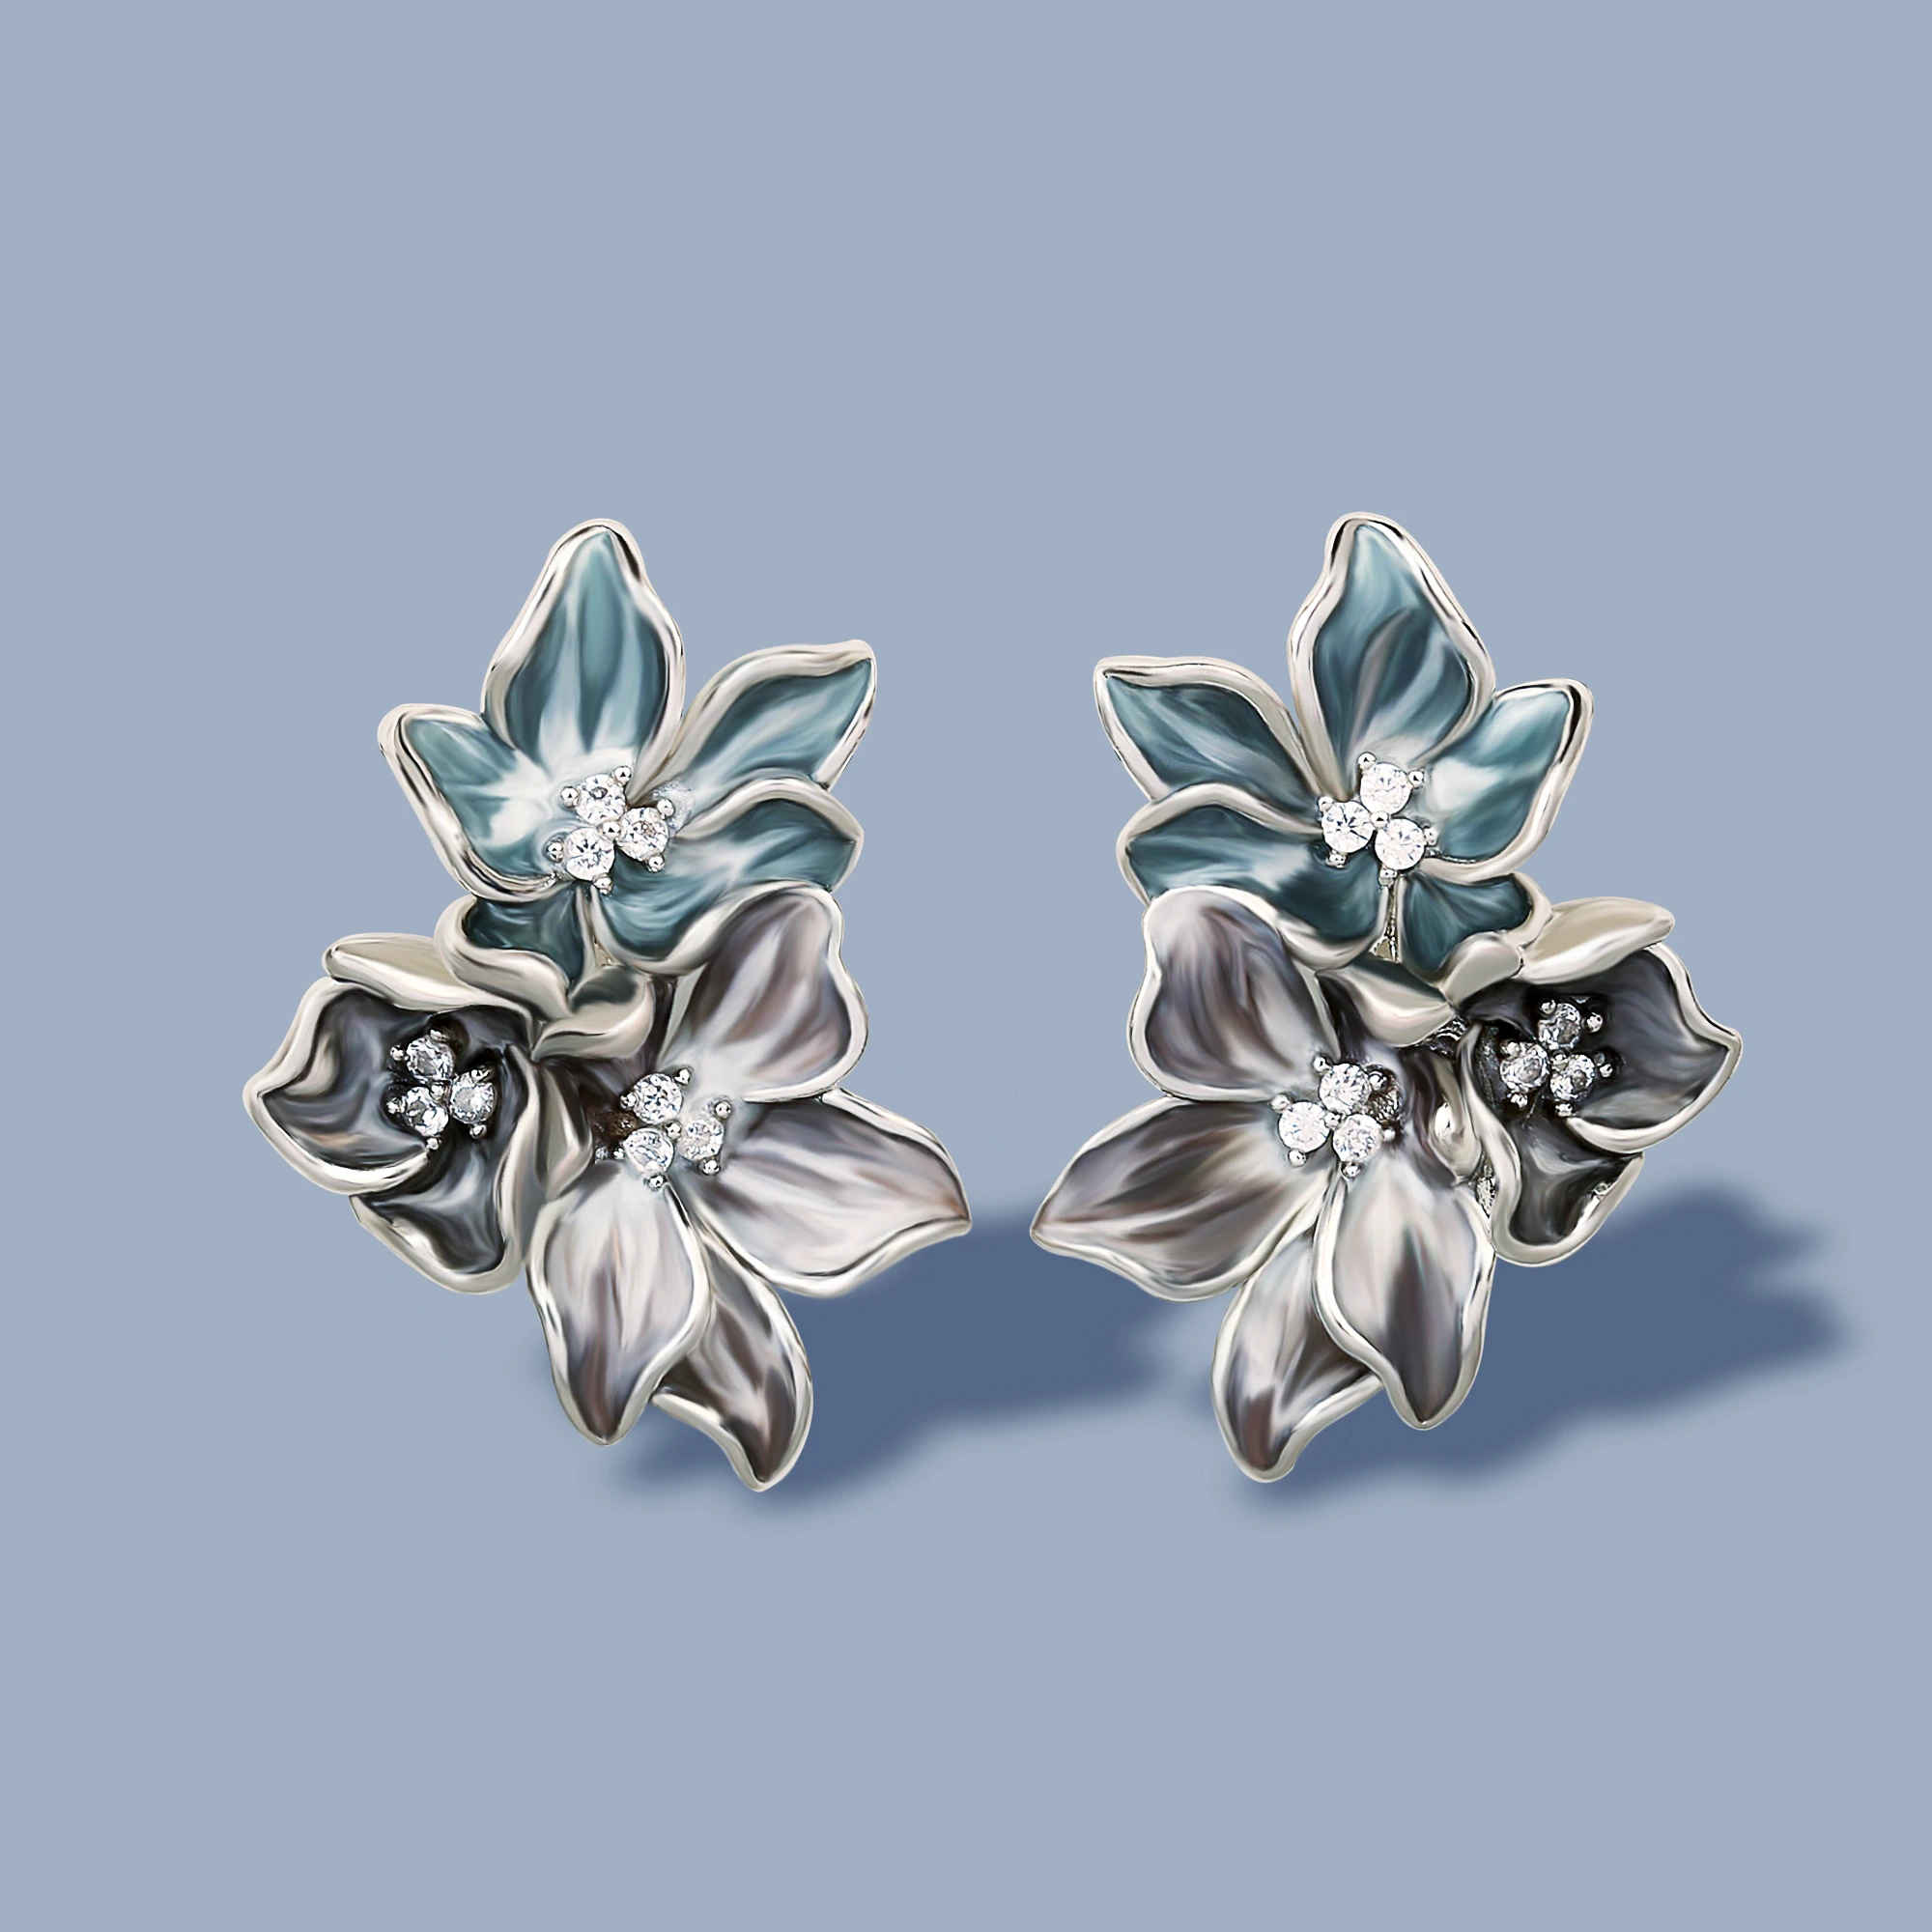 Classic Women's 925 Silver Earrings Elegant Flower Shape Earrings Handmade Enamel Jewelry Wedding Bridal Earrings